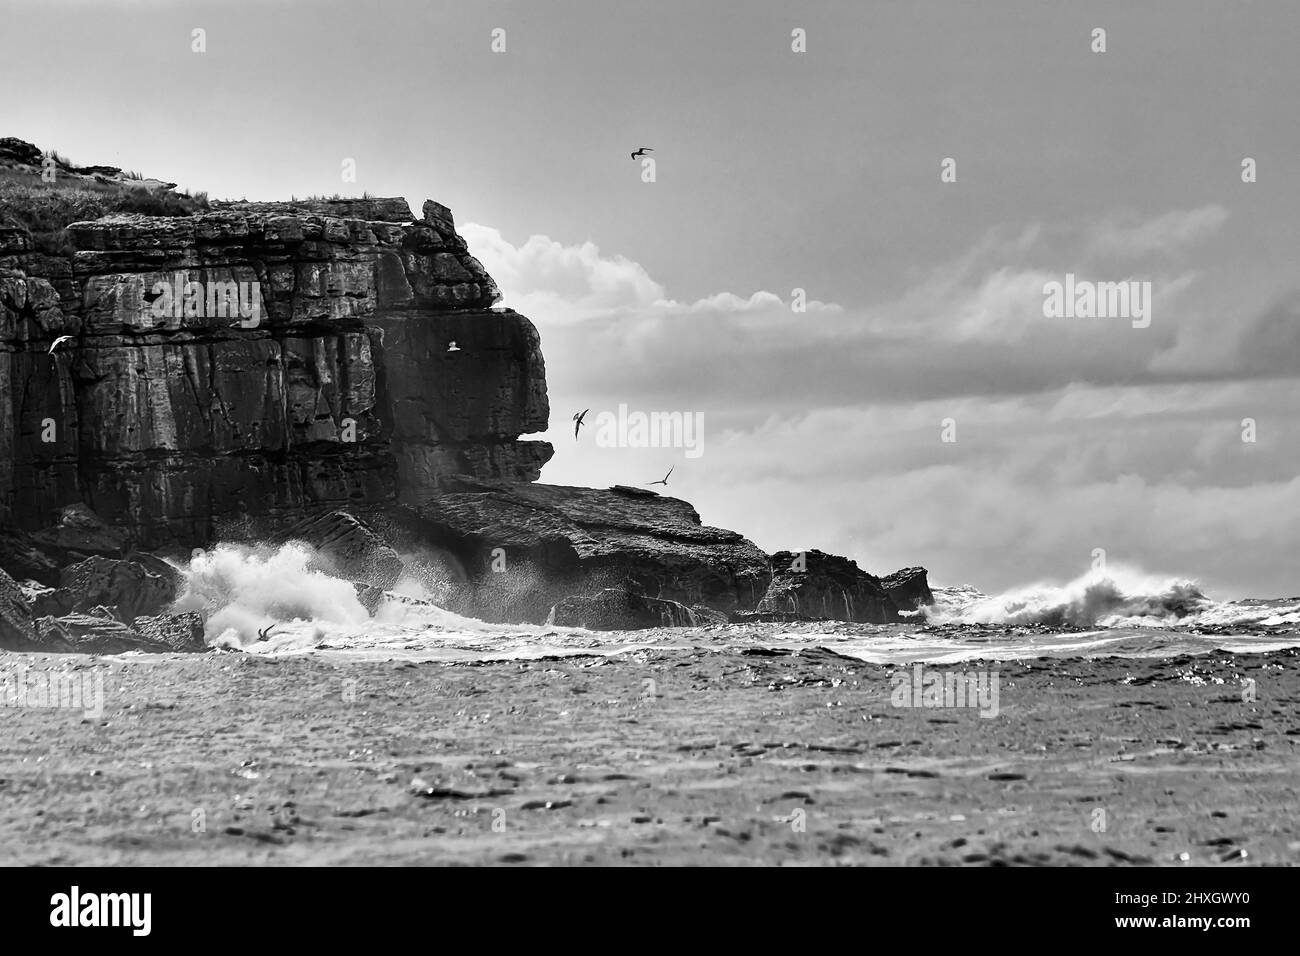 Il bordo Cliffy dell'isola di Bowen scogli nel vento alto e le onde forti all'alta marea - la costa del pacifico Australiana stagcape. Foto Stock